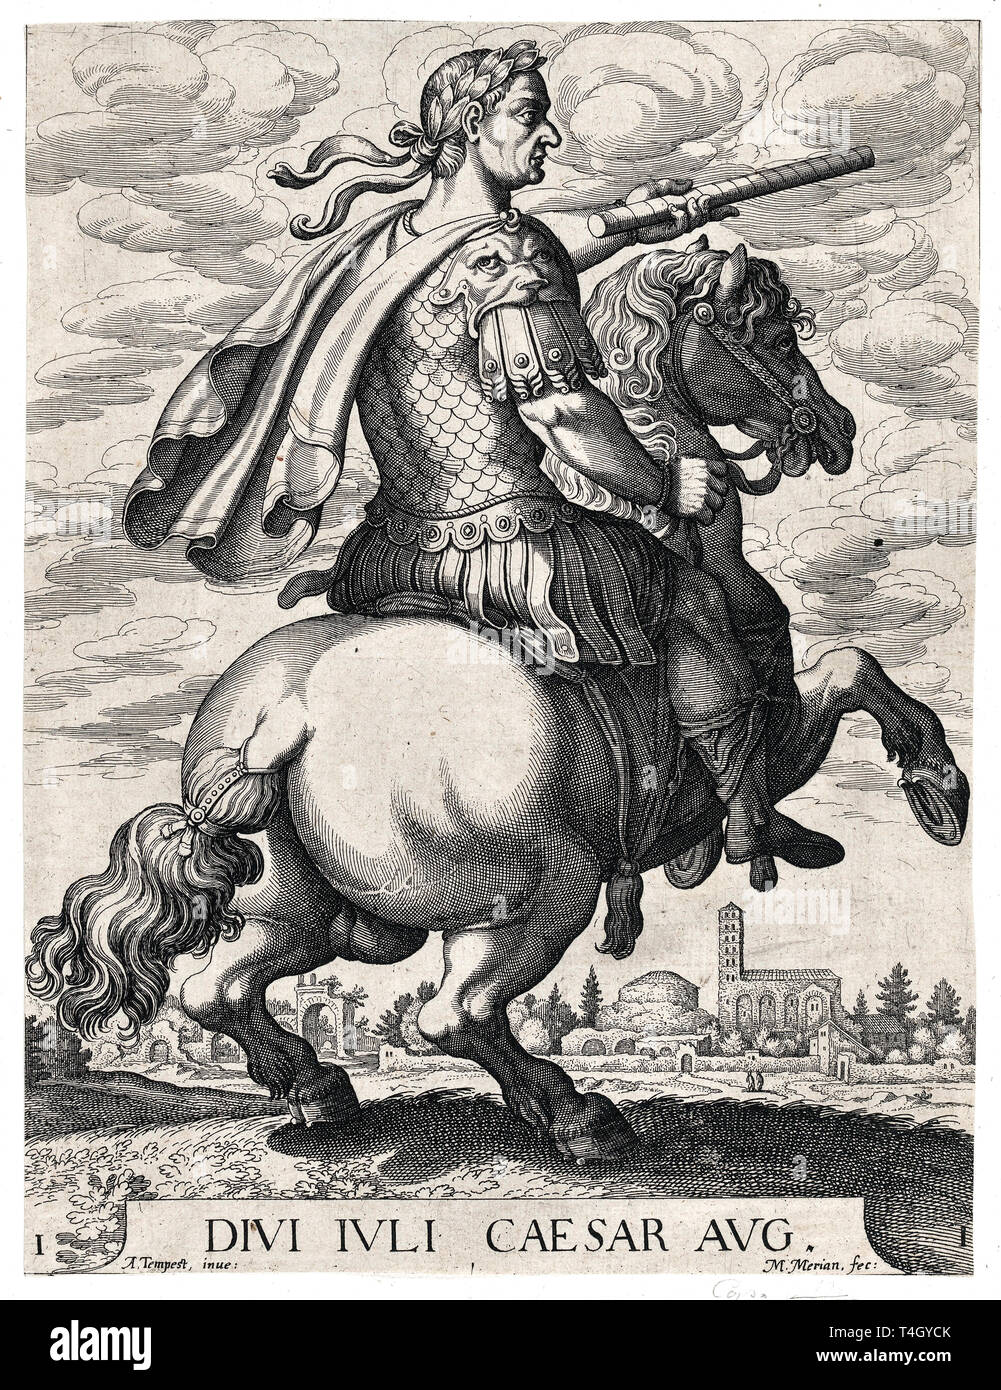 Empereur Jules César à cheval, à partir de ' Les douze Césars Romains', Matthäus Merian l'ancien après Tempesta, ch. 1610 Banque D'Images